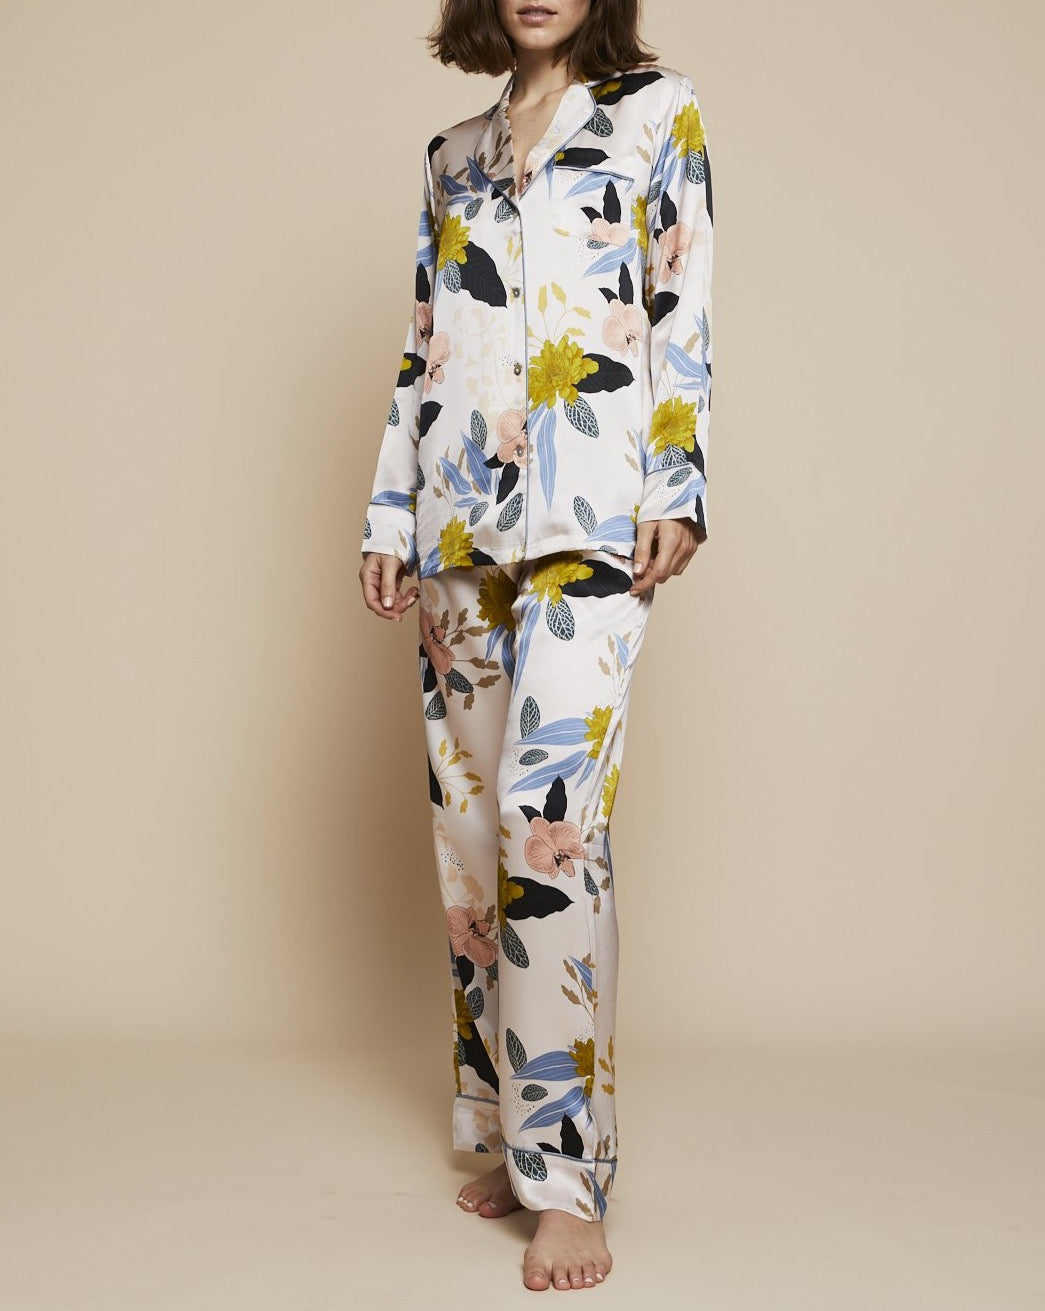 Elisabetha Bottom in August - Loungewear Bottom, Pyjama, Silk Pyjama, Nightwear | RADICE